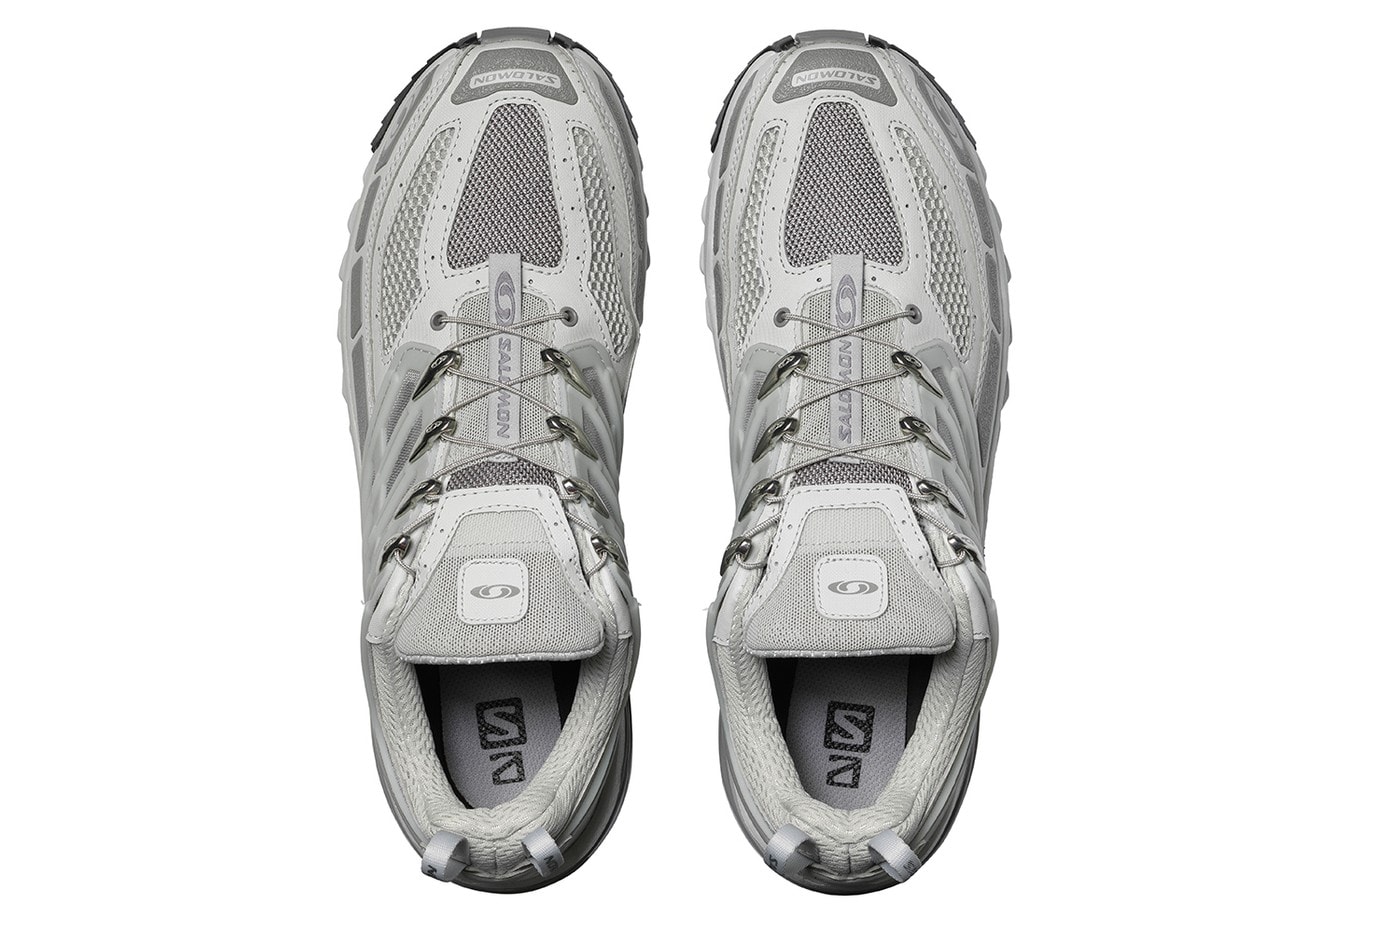 Salomon 全新 ACS PRO ADVANCED 鞋款正式登場